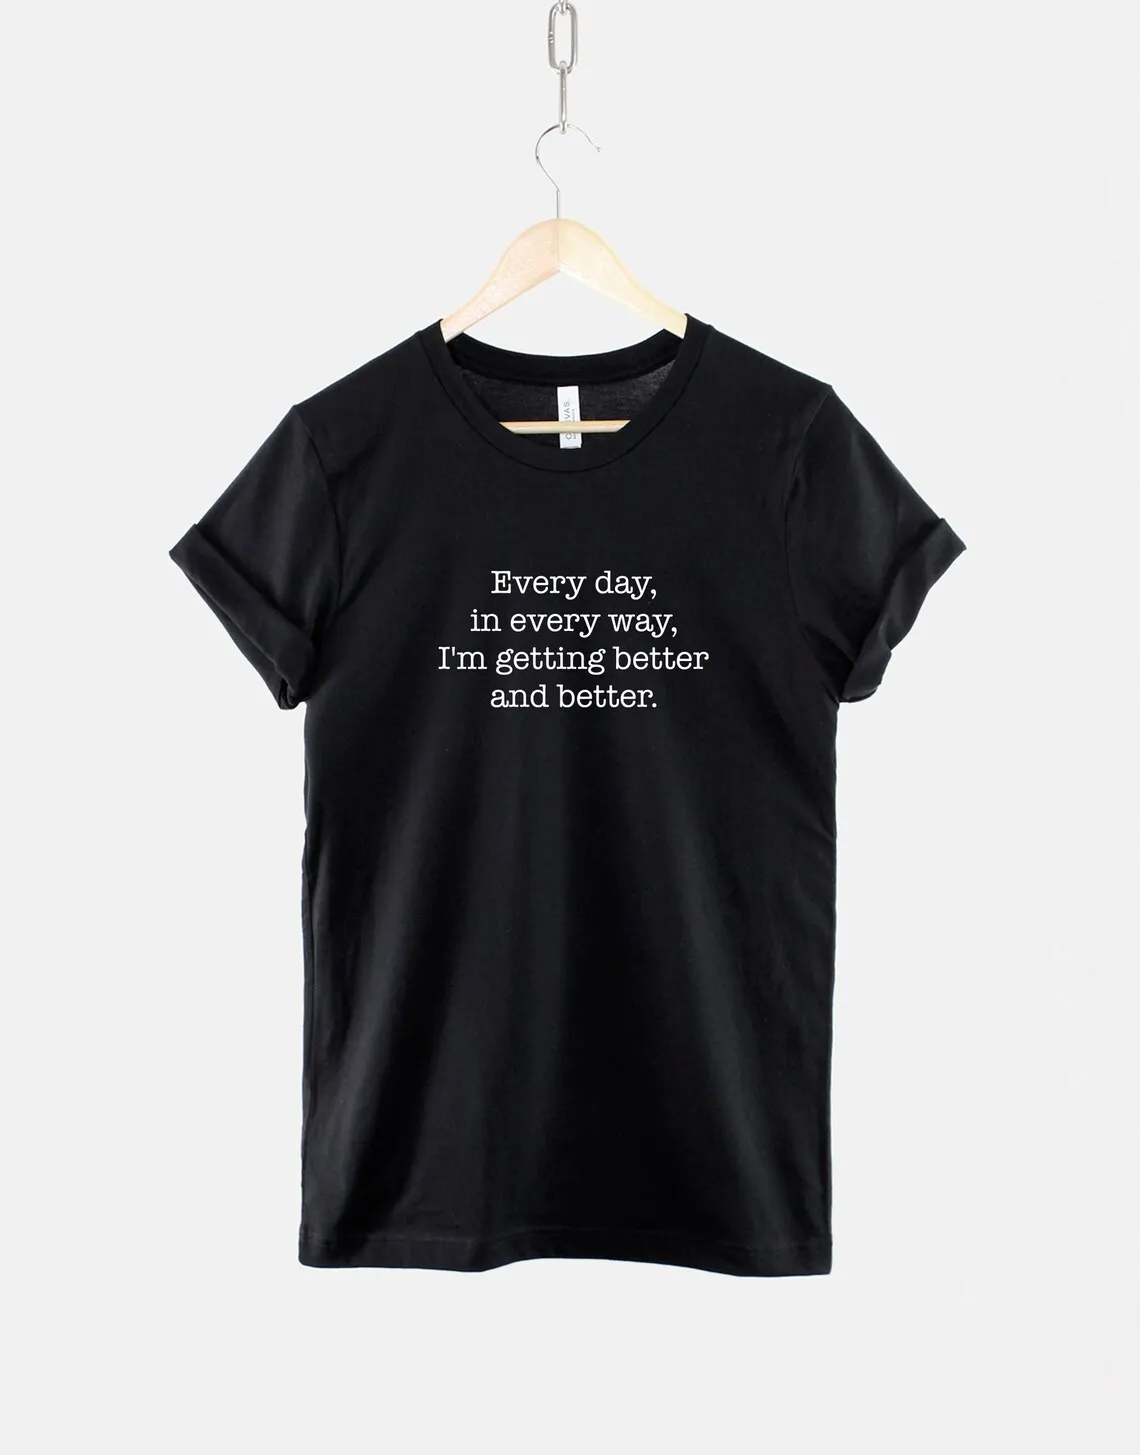 

2022 Новая модная рубашка с положительными аффирмациями, футболка, рубашка с ментальным здоровьем, каждый день, на каждом пути, моя жизнь стан...